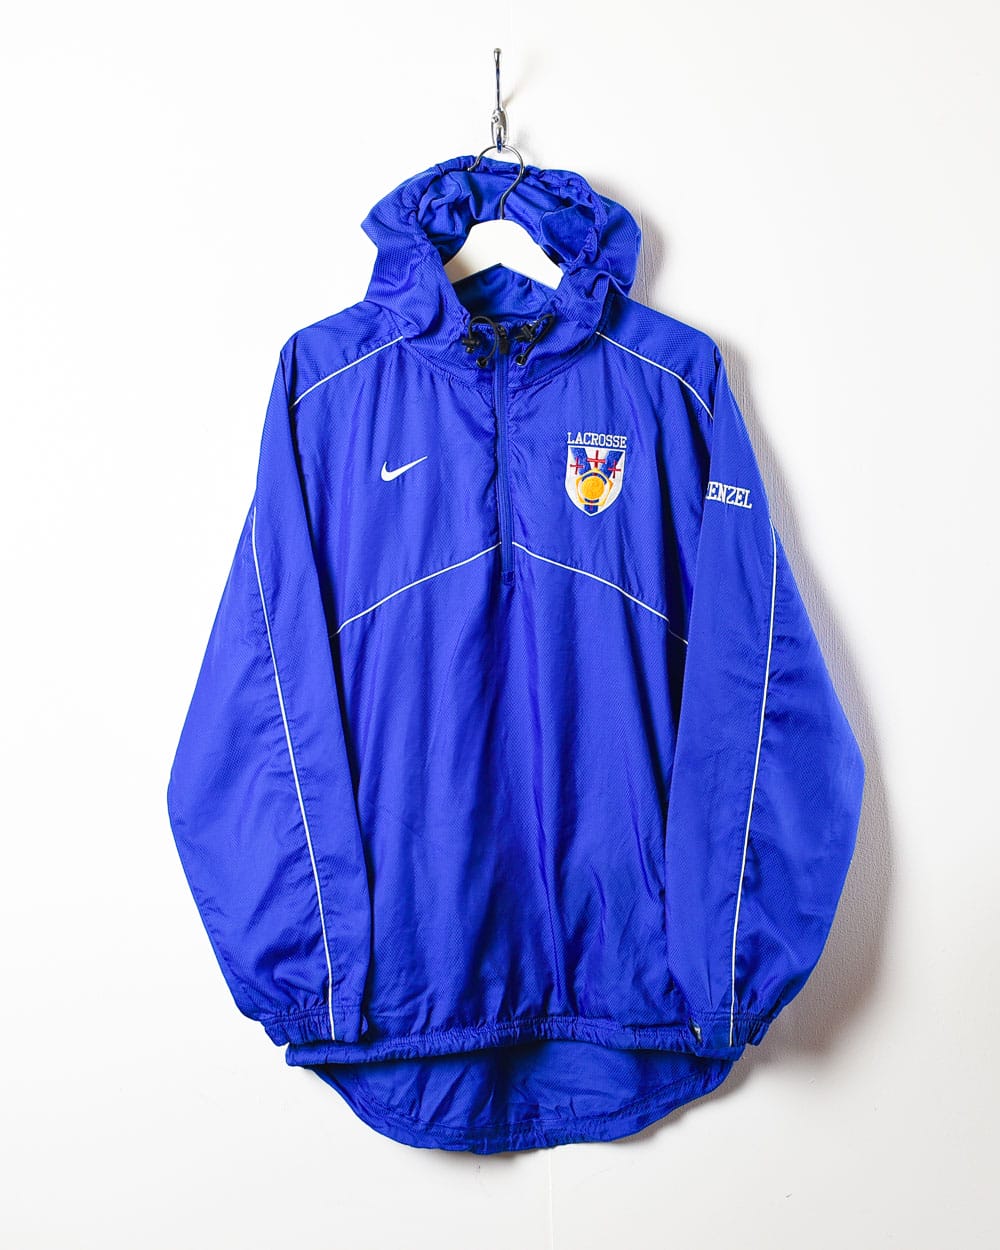 Blue Nike Lacrosse 1/4 Zip Windbreaker Jacket - Small